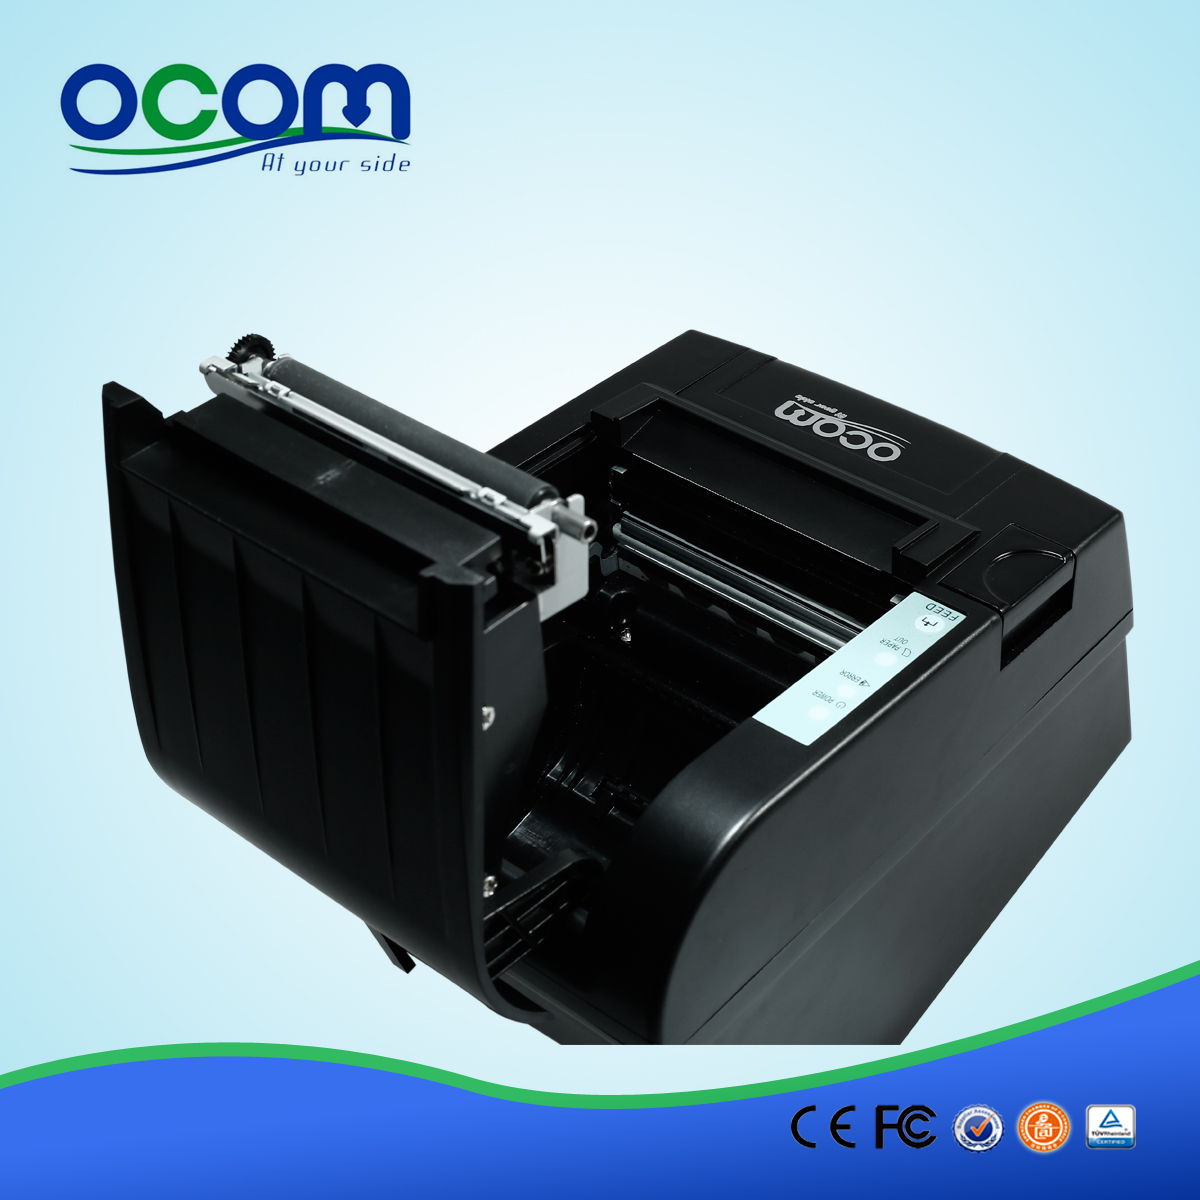 80 мм Wi-Fi термопринтер OCPP-806-W